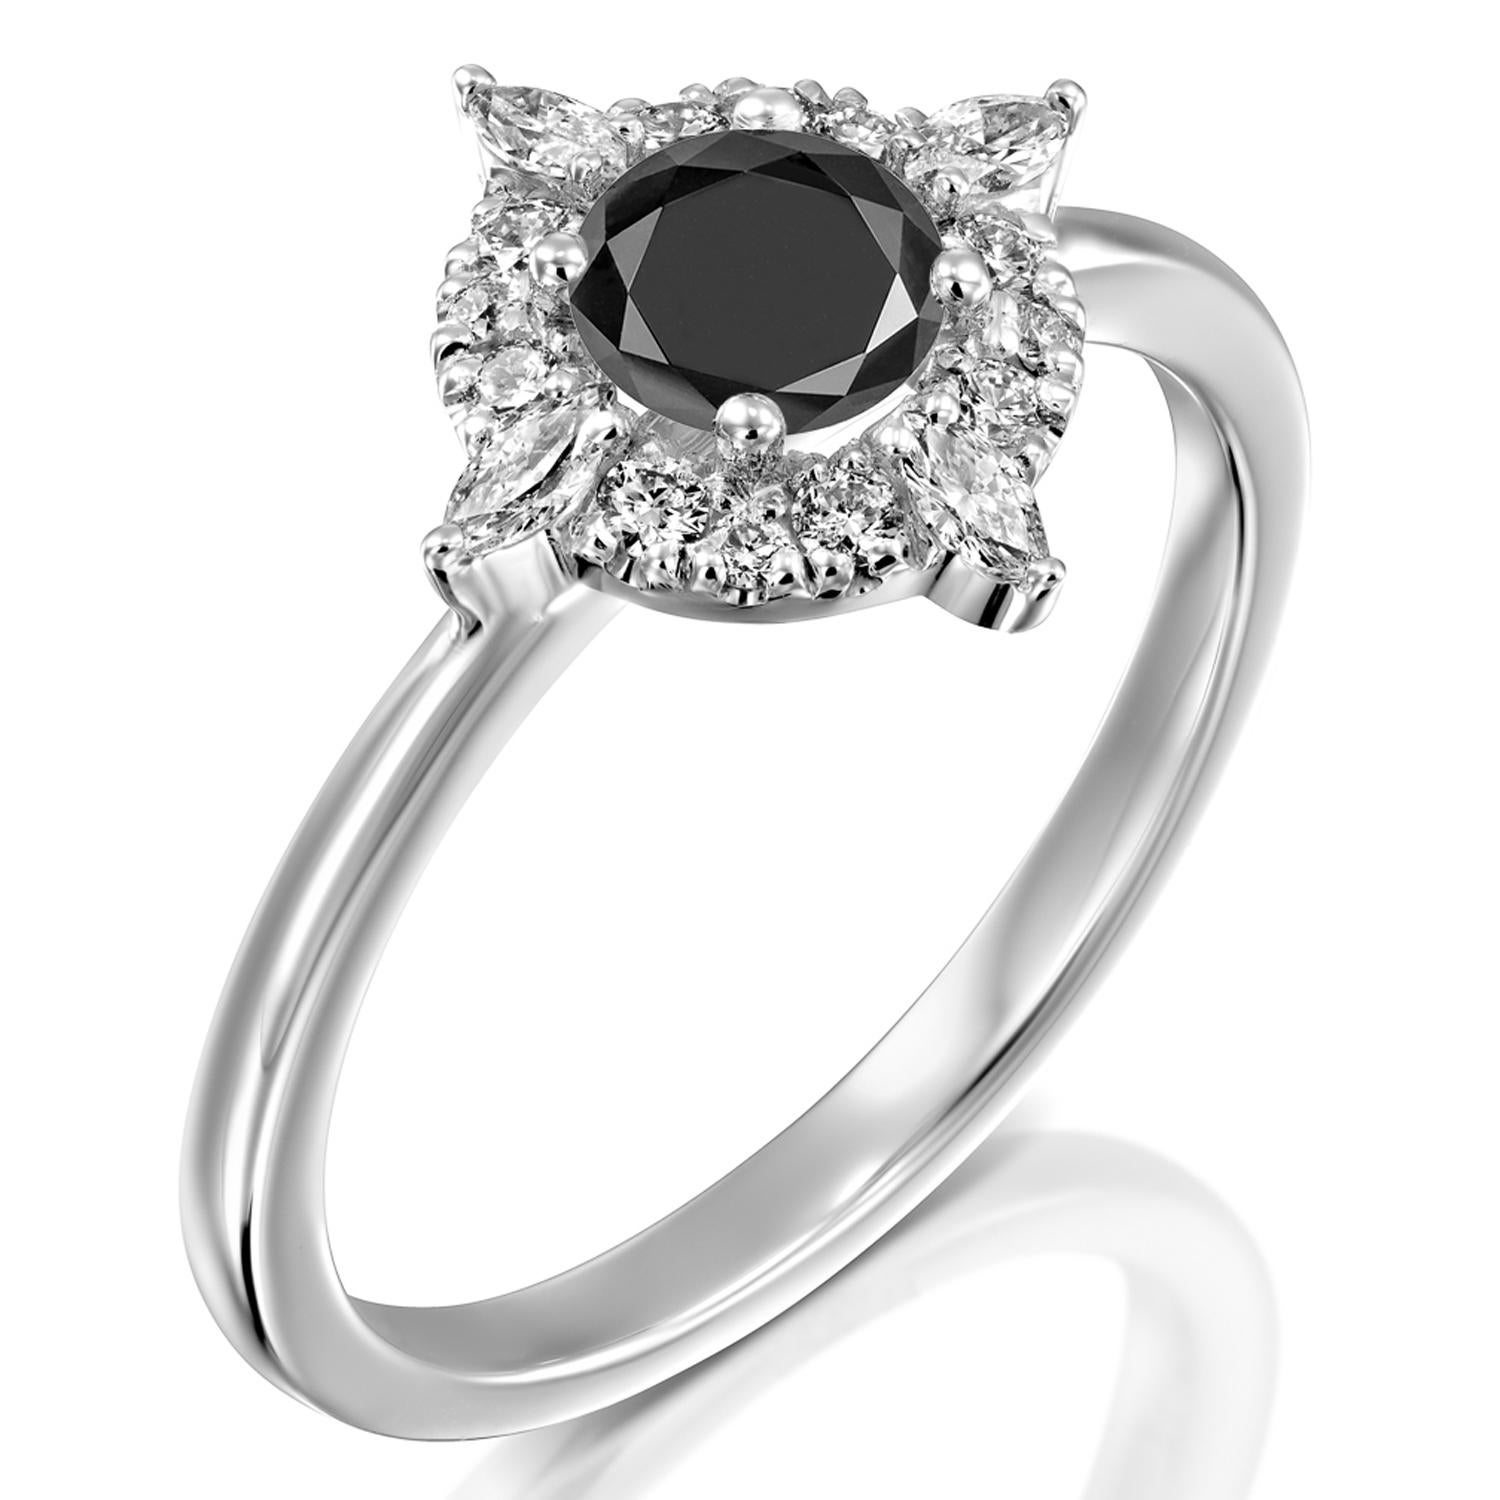 4 carat black diamond solitaire ring